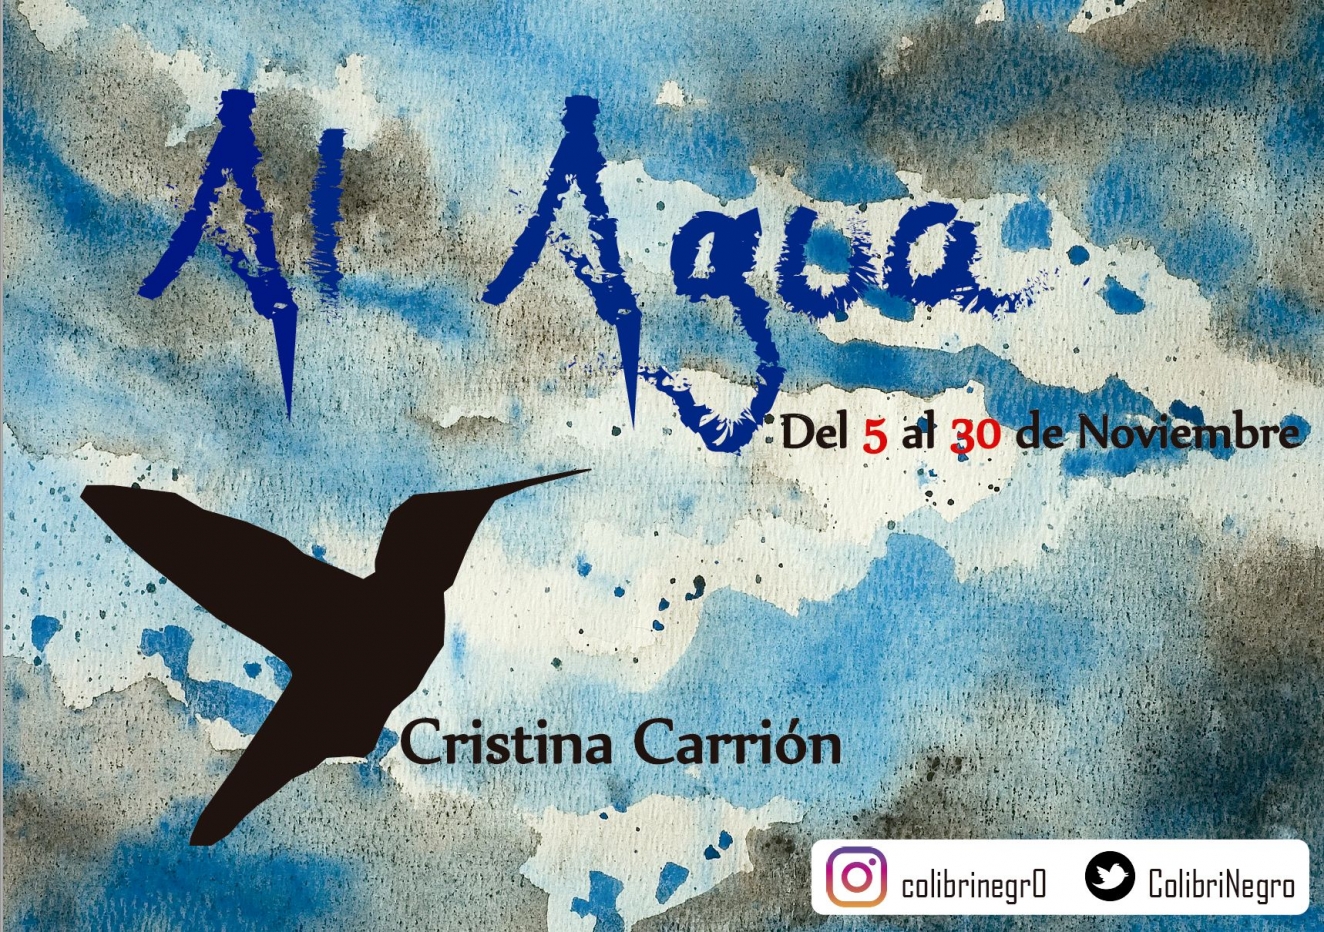 EXPOSICIÓN | AL AGUA de Cristina Carrion